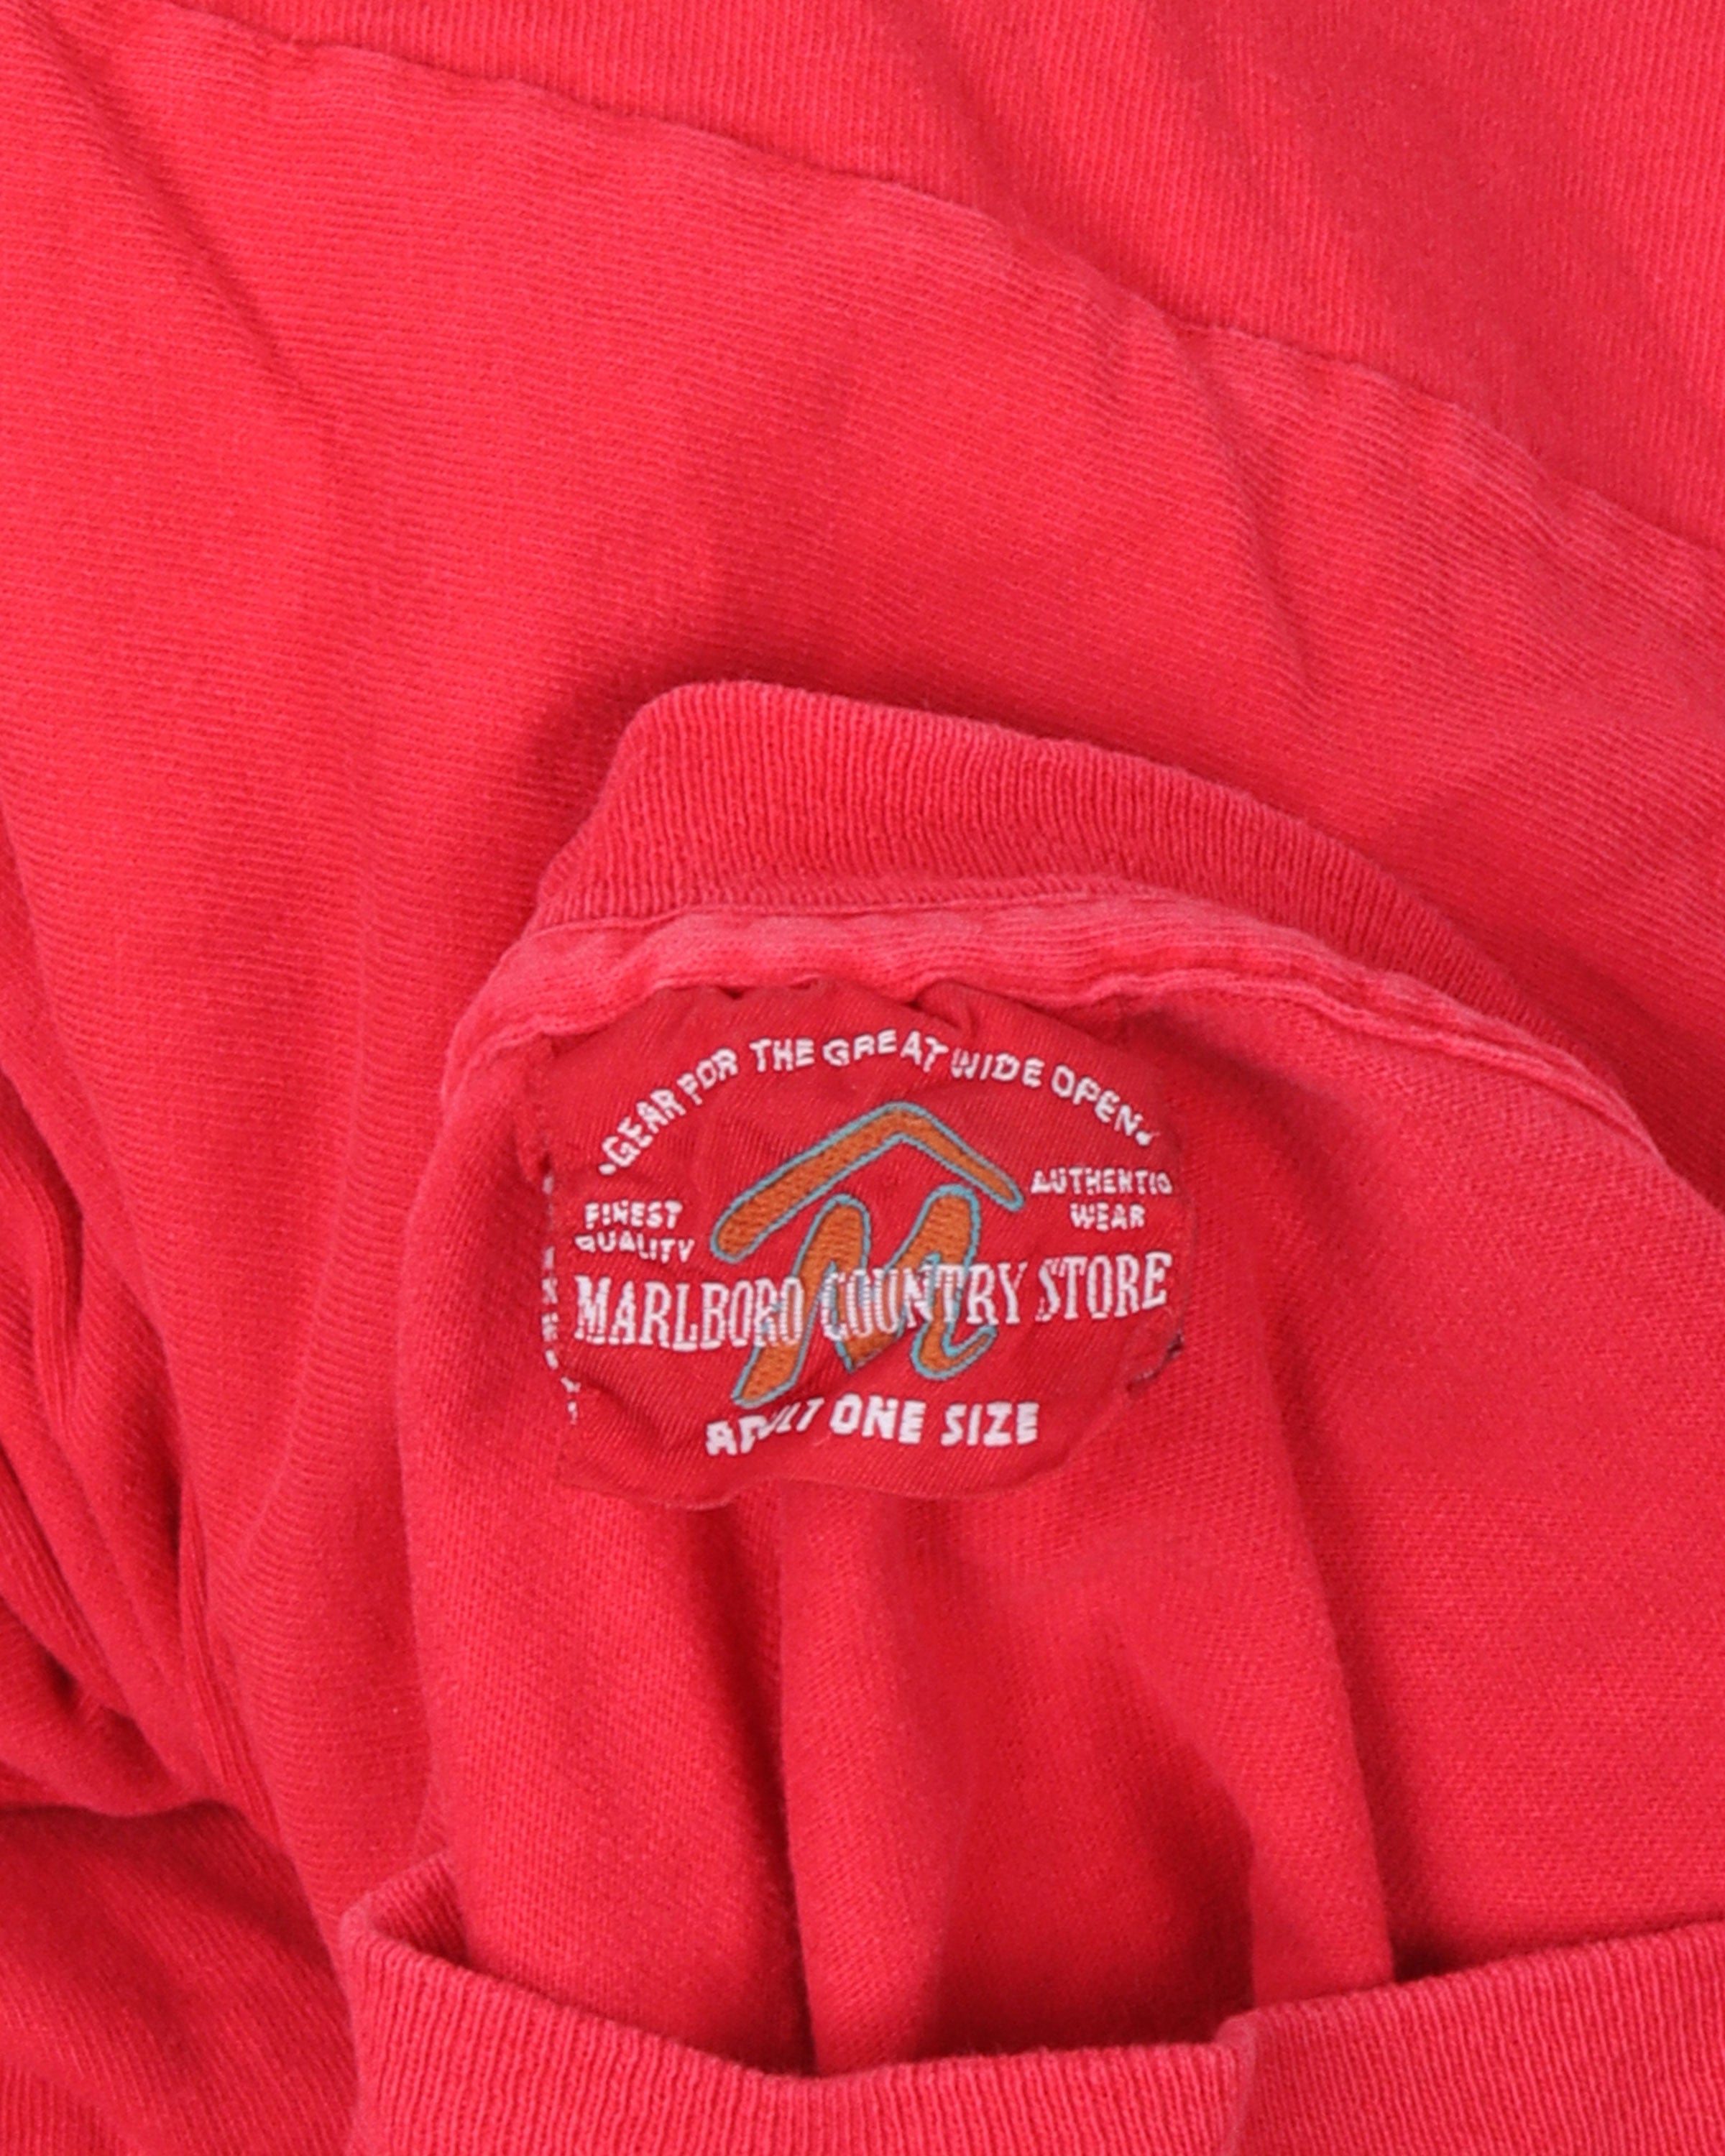 Marlboro Country Store T-Shirt